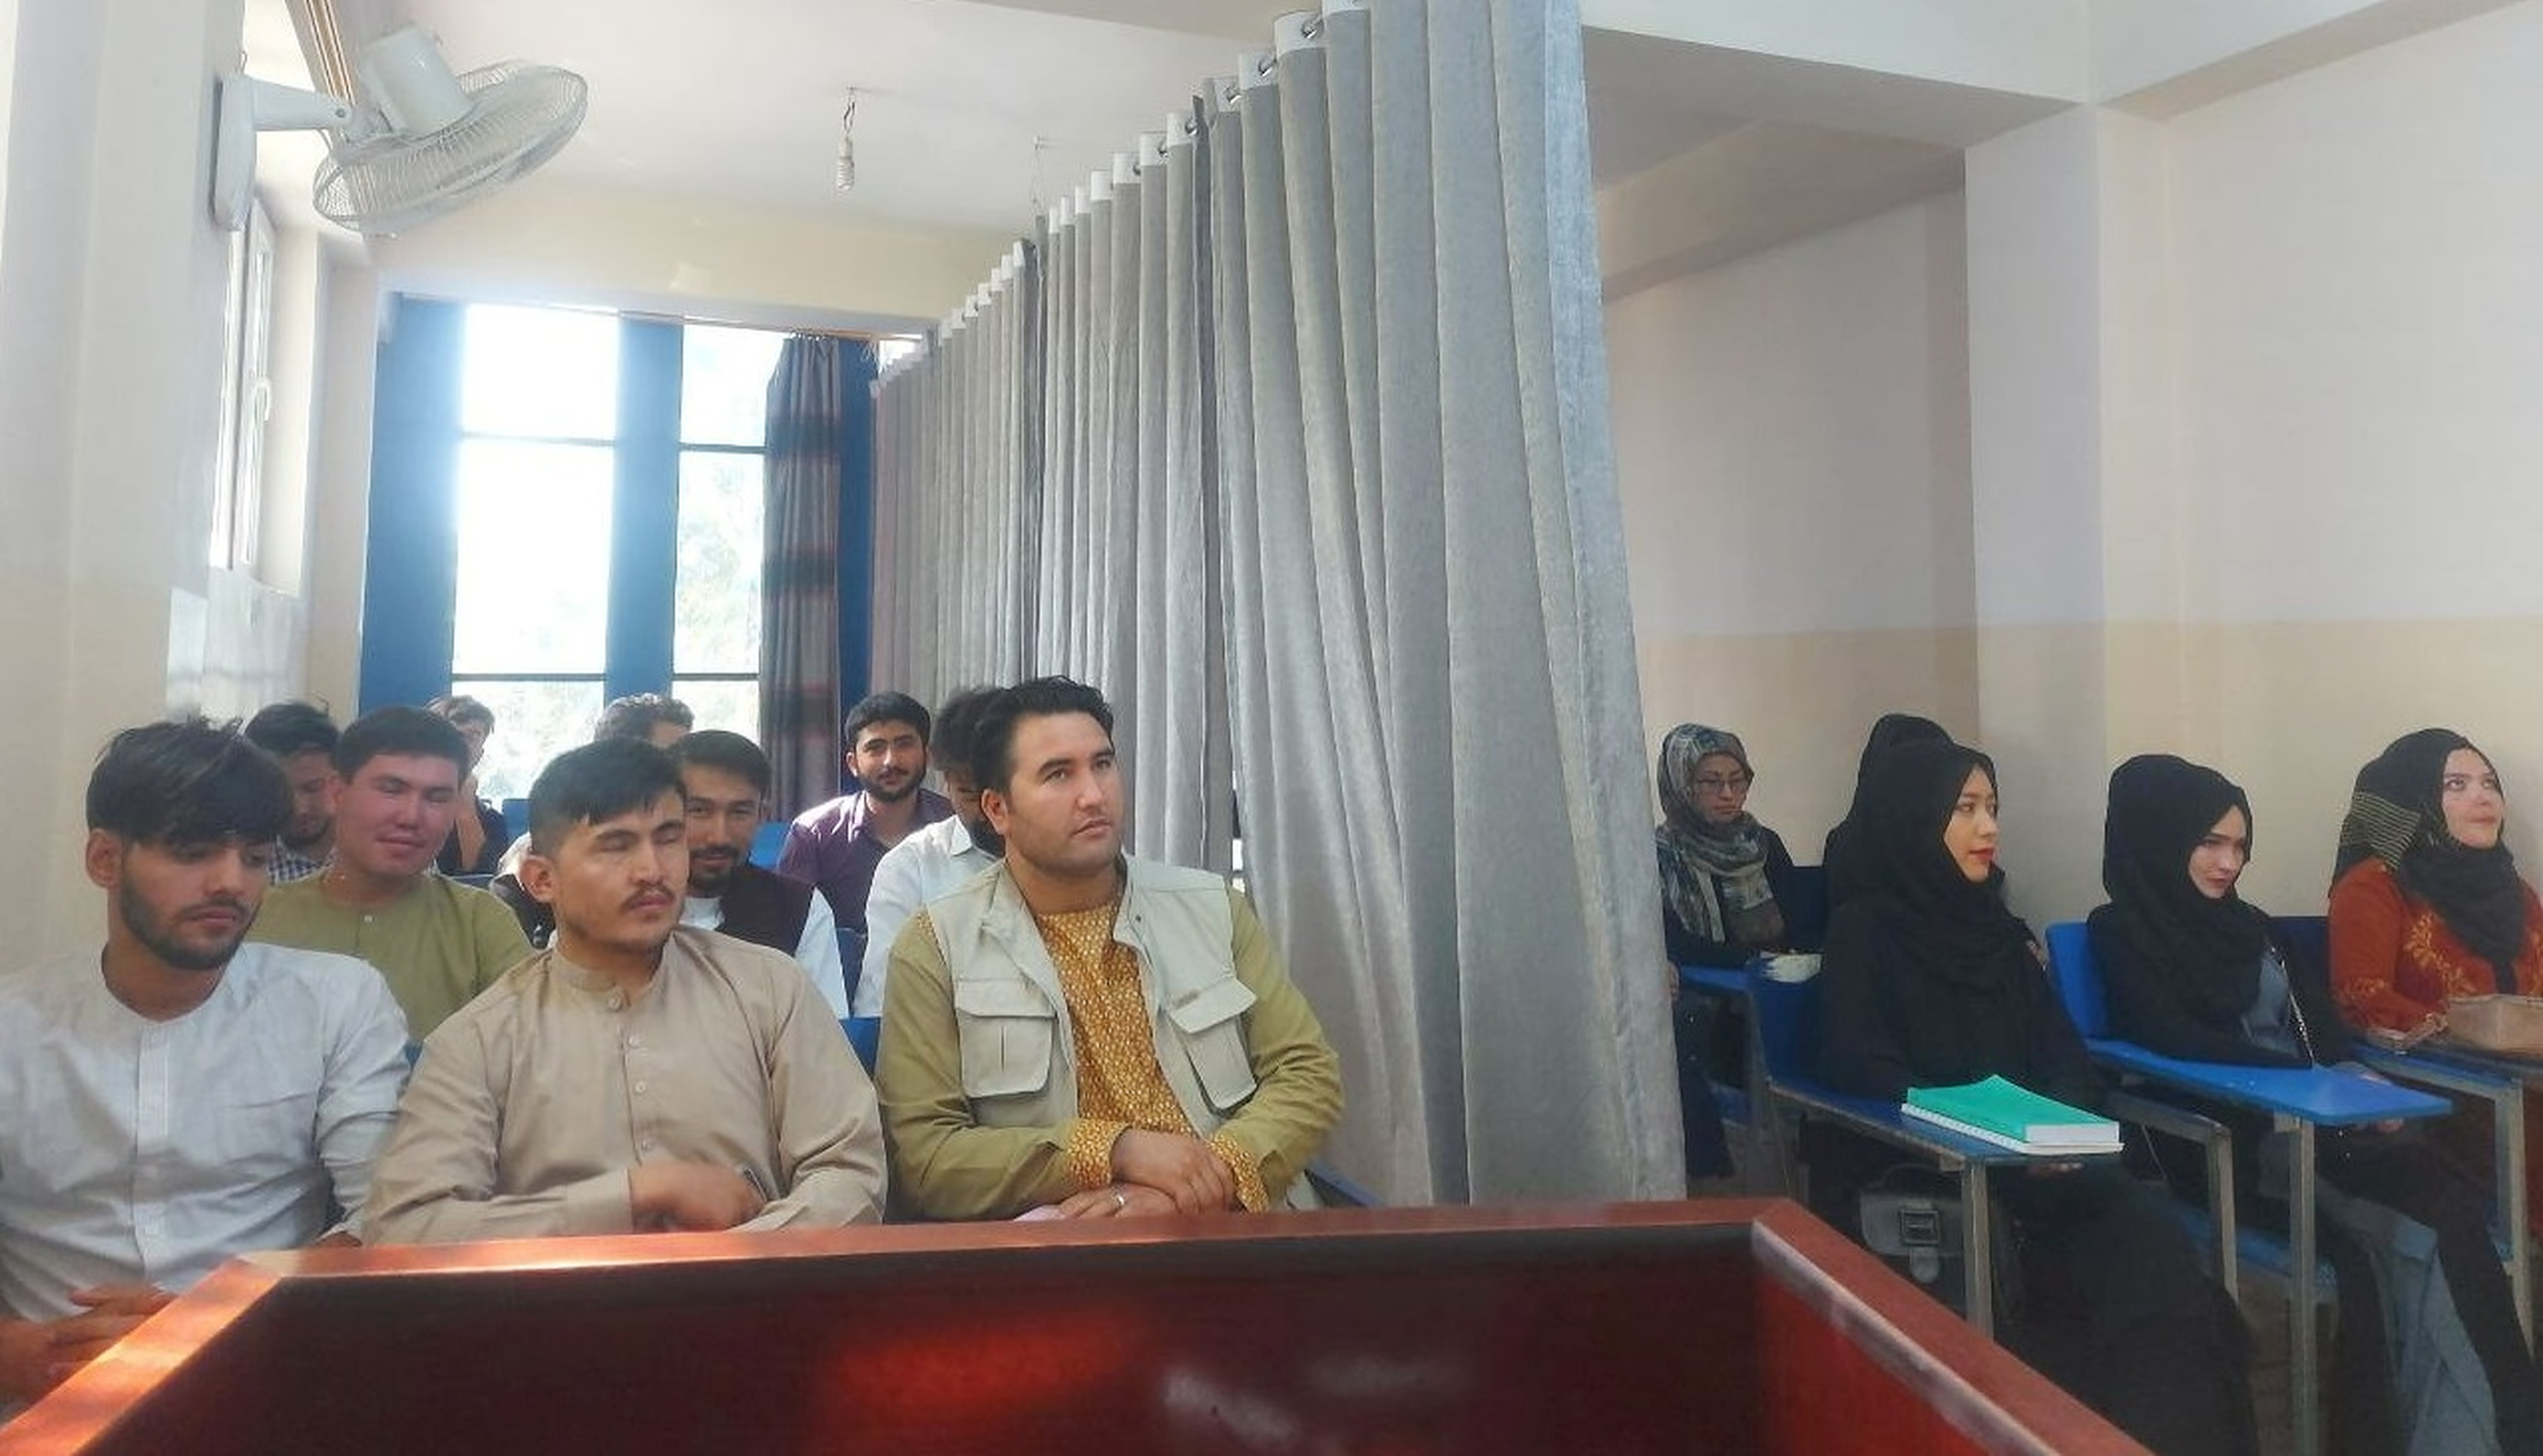 Afganistan| Studenții și studentele sunt separați prin draperii care împart sălile de curs